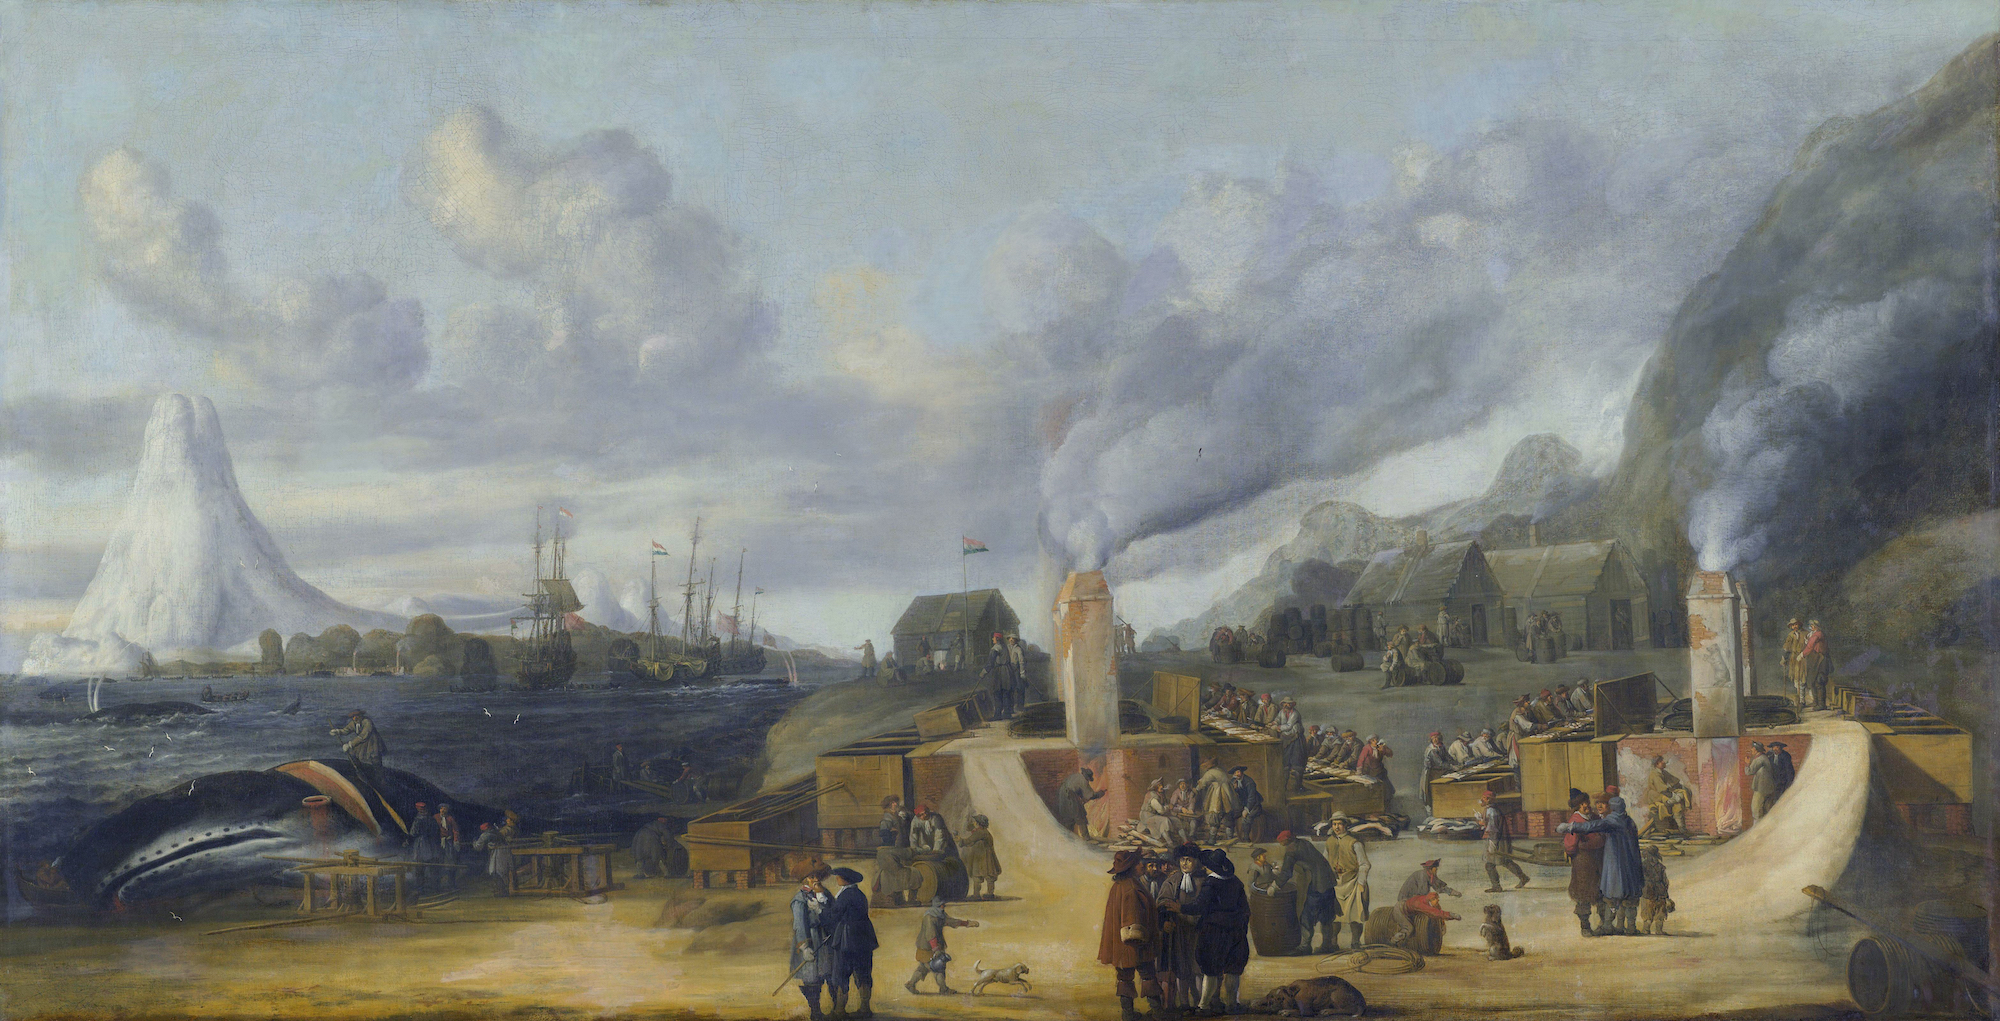  La Fábrica de Aceite de Ballena de la Cámara de Amsterdam de la Noordsche Compagnie en Smeerenburg by Cornelis de Man - 1639 - 108 x 205 cm Rijksmuseum